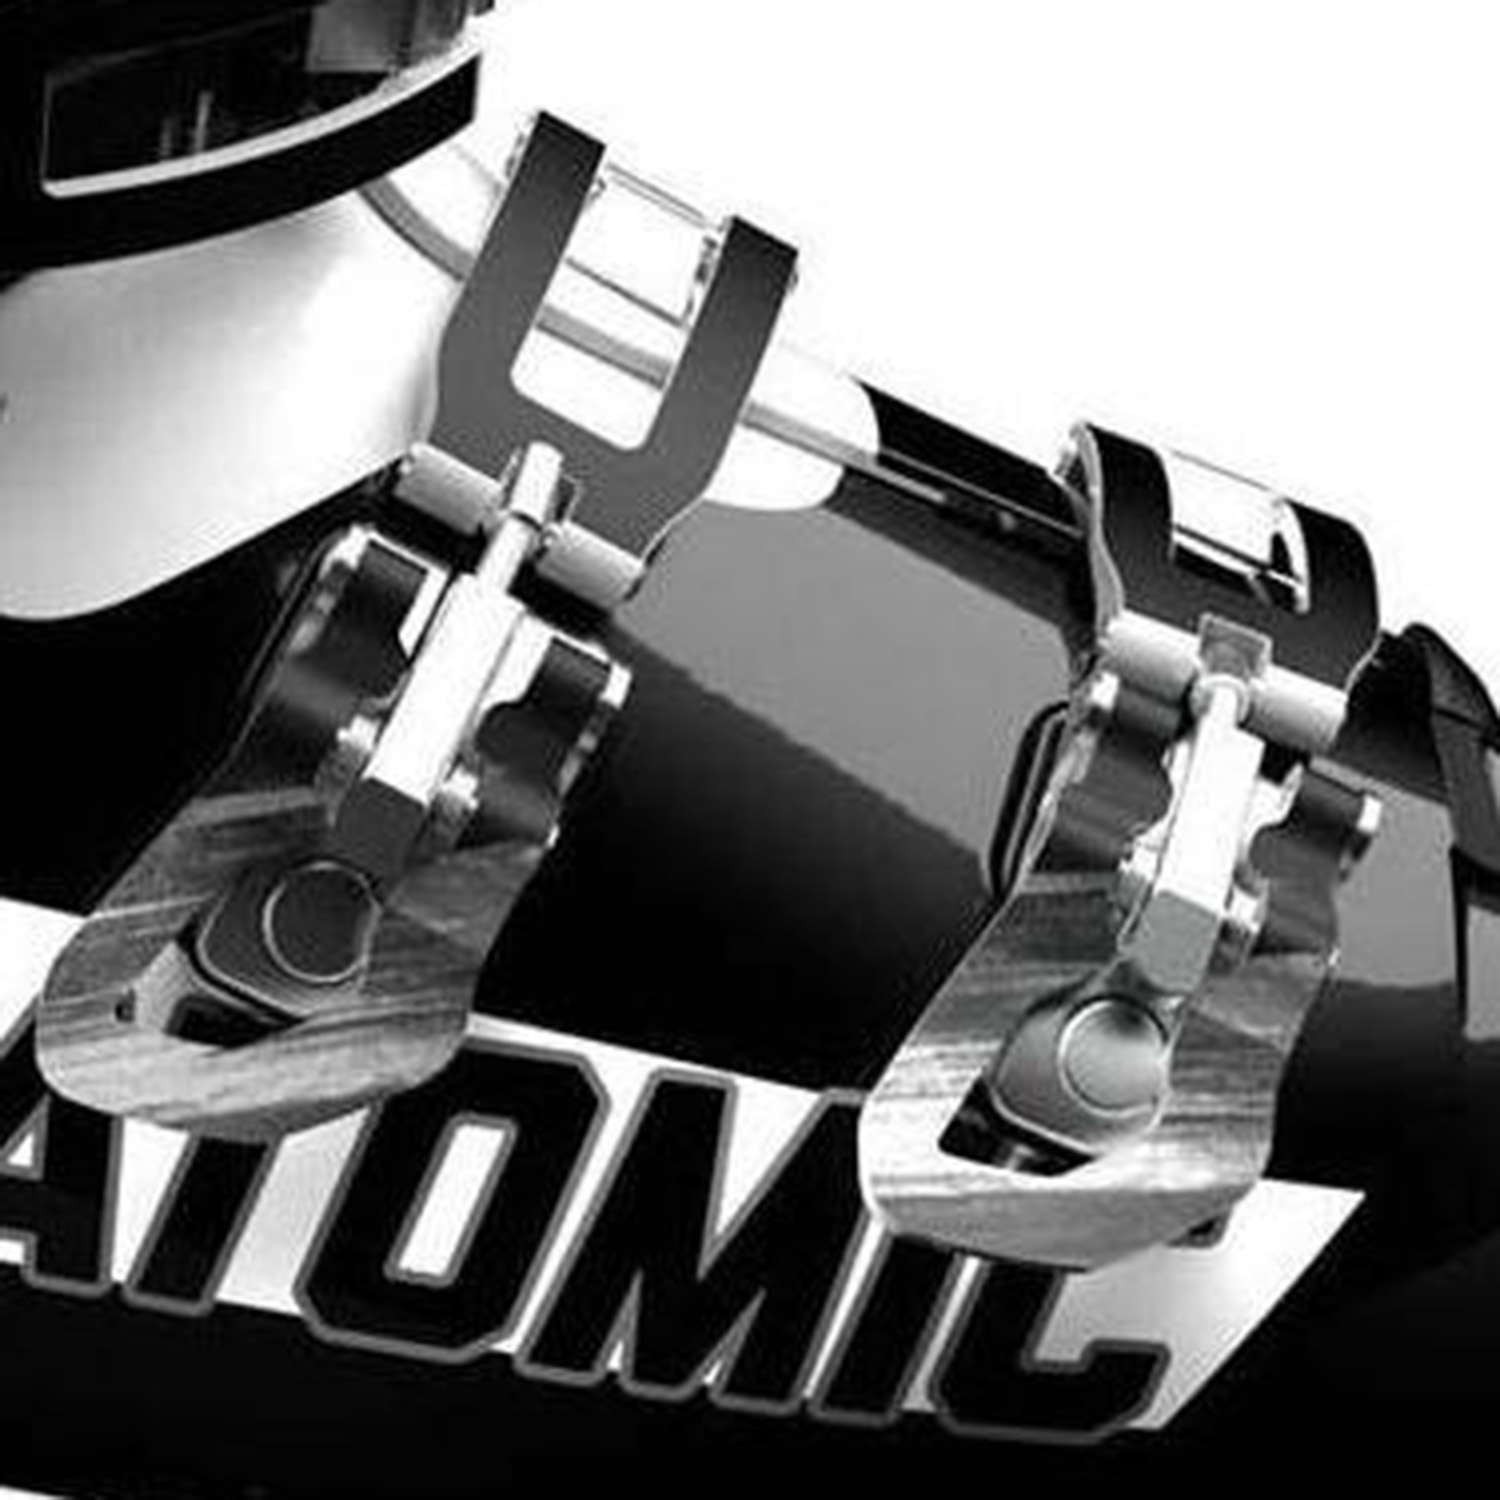 Горнолыжные ботинки ATOMIC HAWX MAGNA R80 RENTAL Black/White / Черный, белый